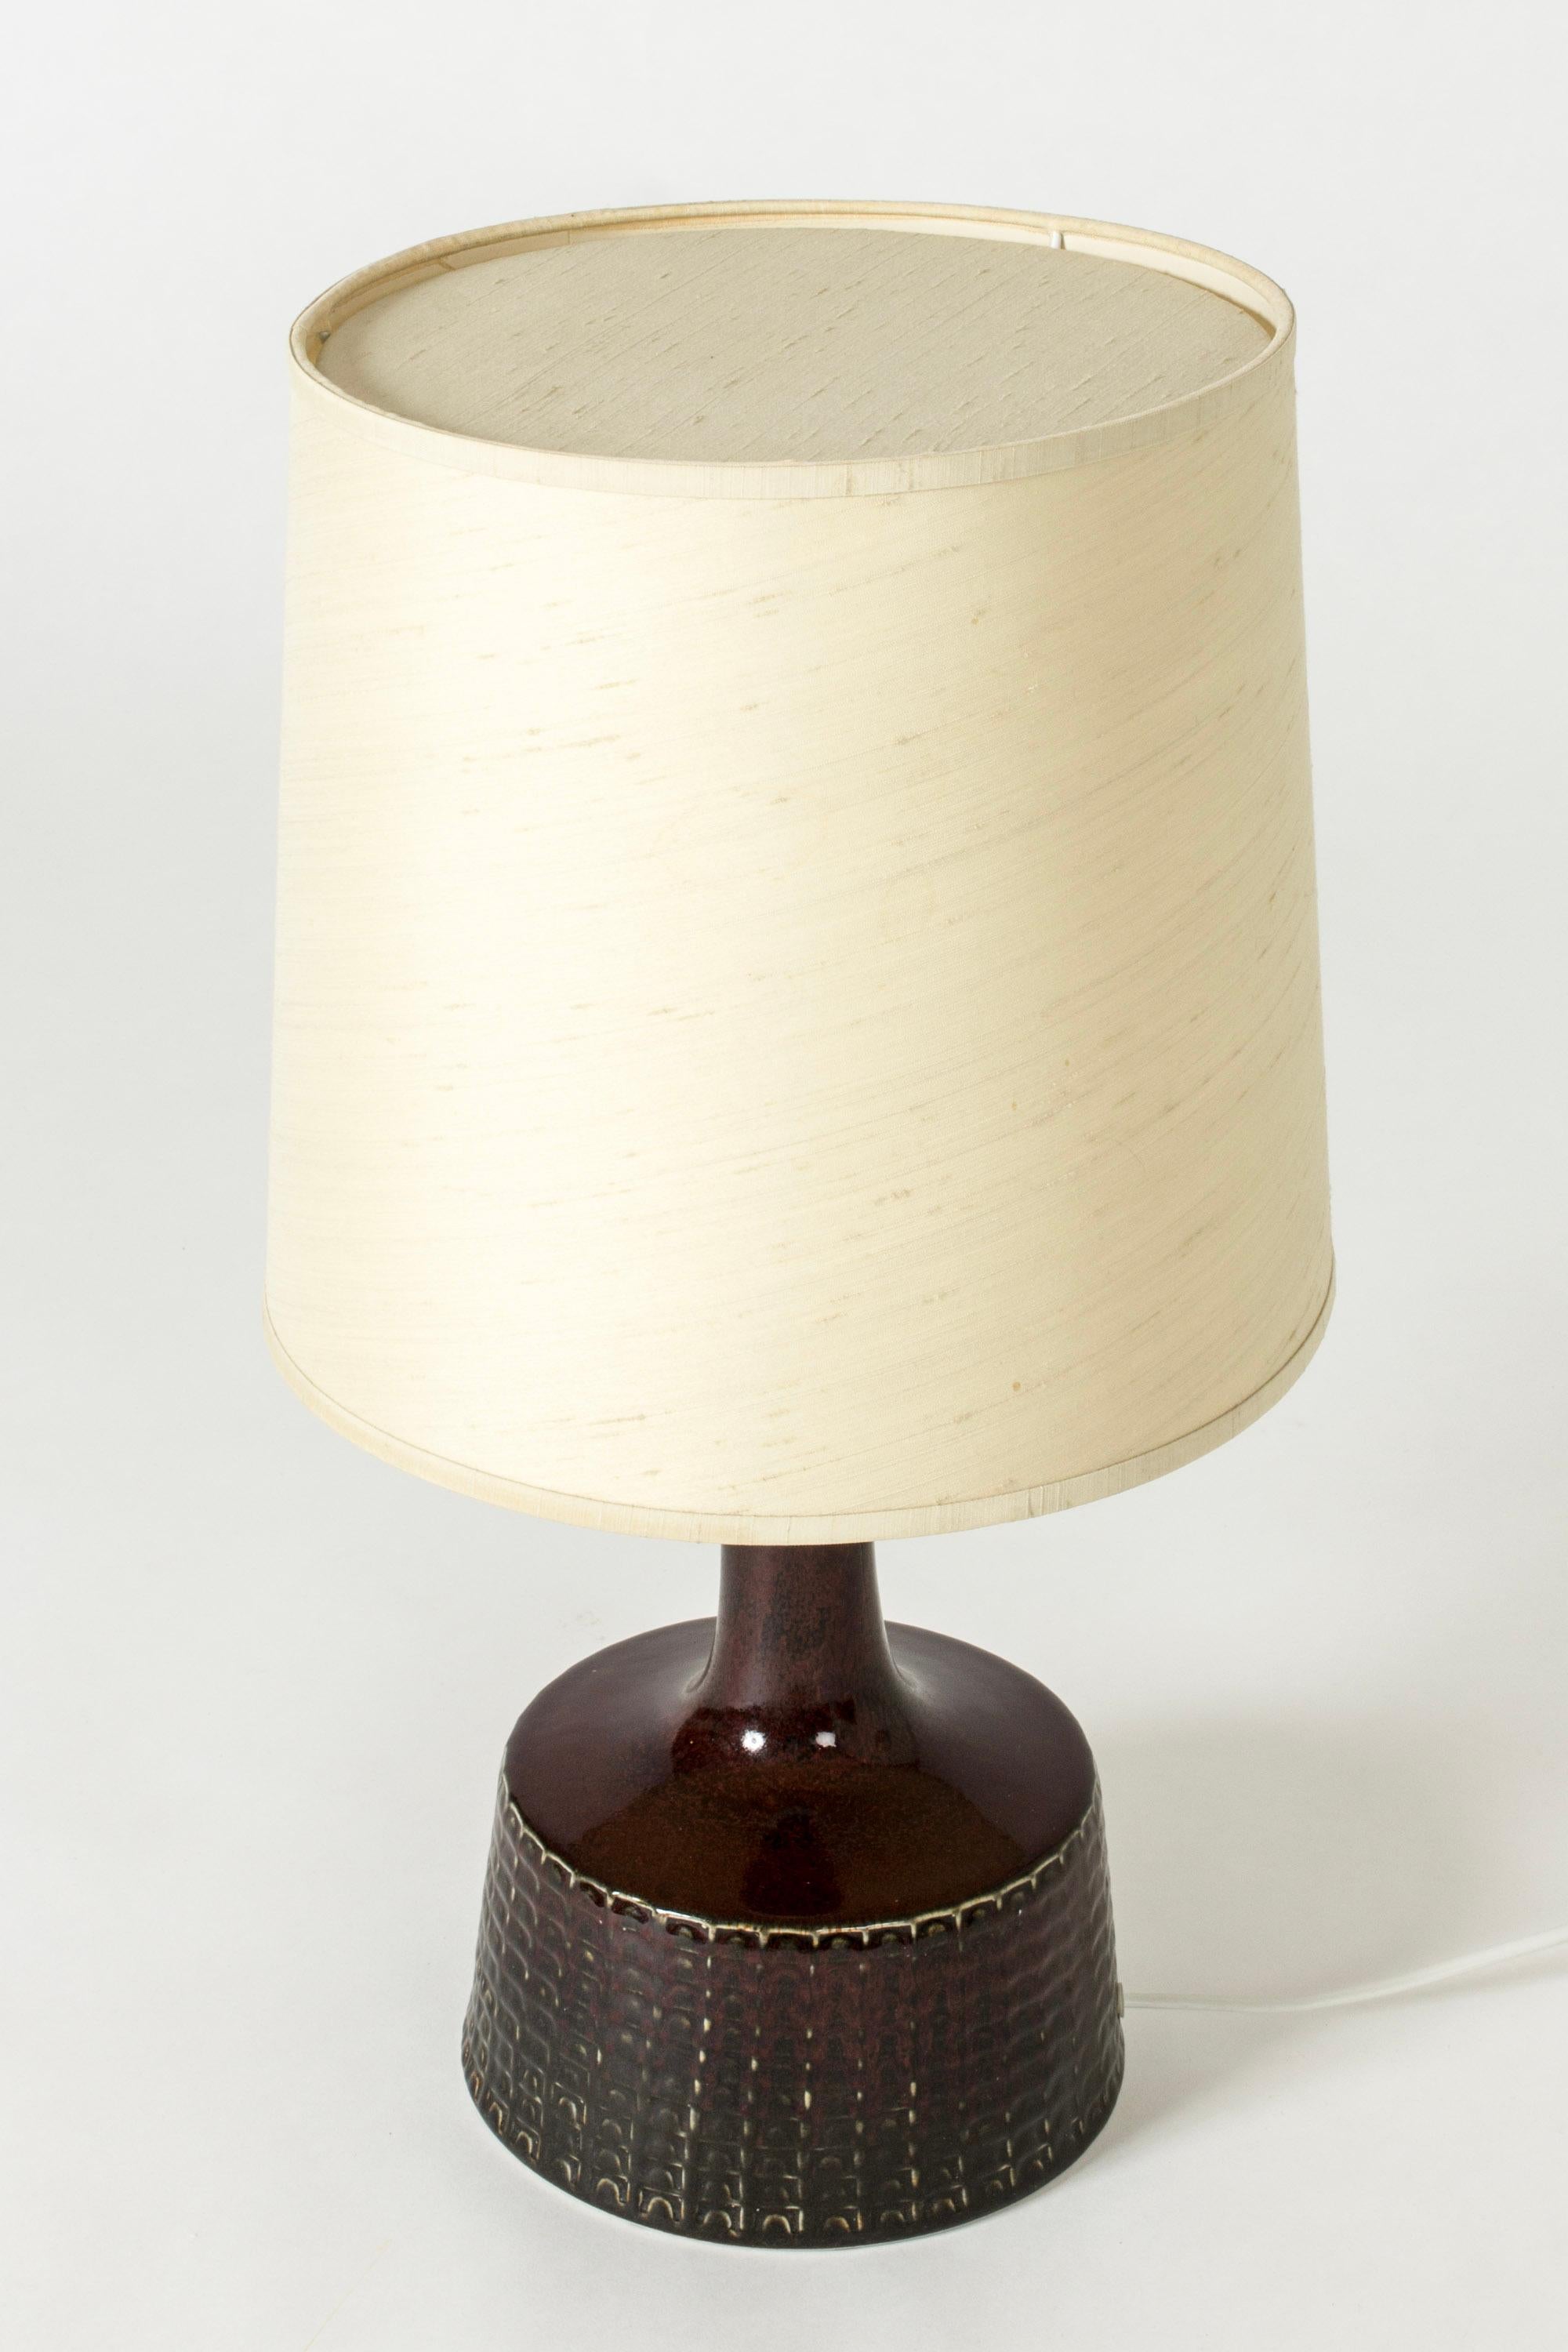 Scandinavian Modern Modernist Mid-Century Stoneware Table Lamp, Stig Lindberg, Gustavsberg, 1960s For Sale